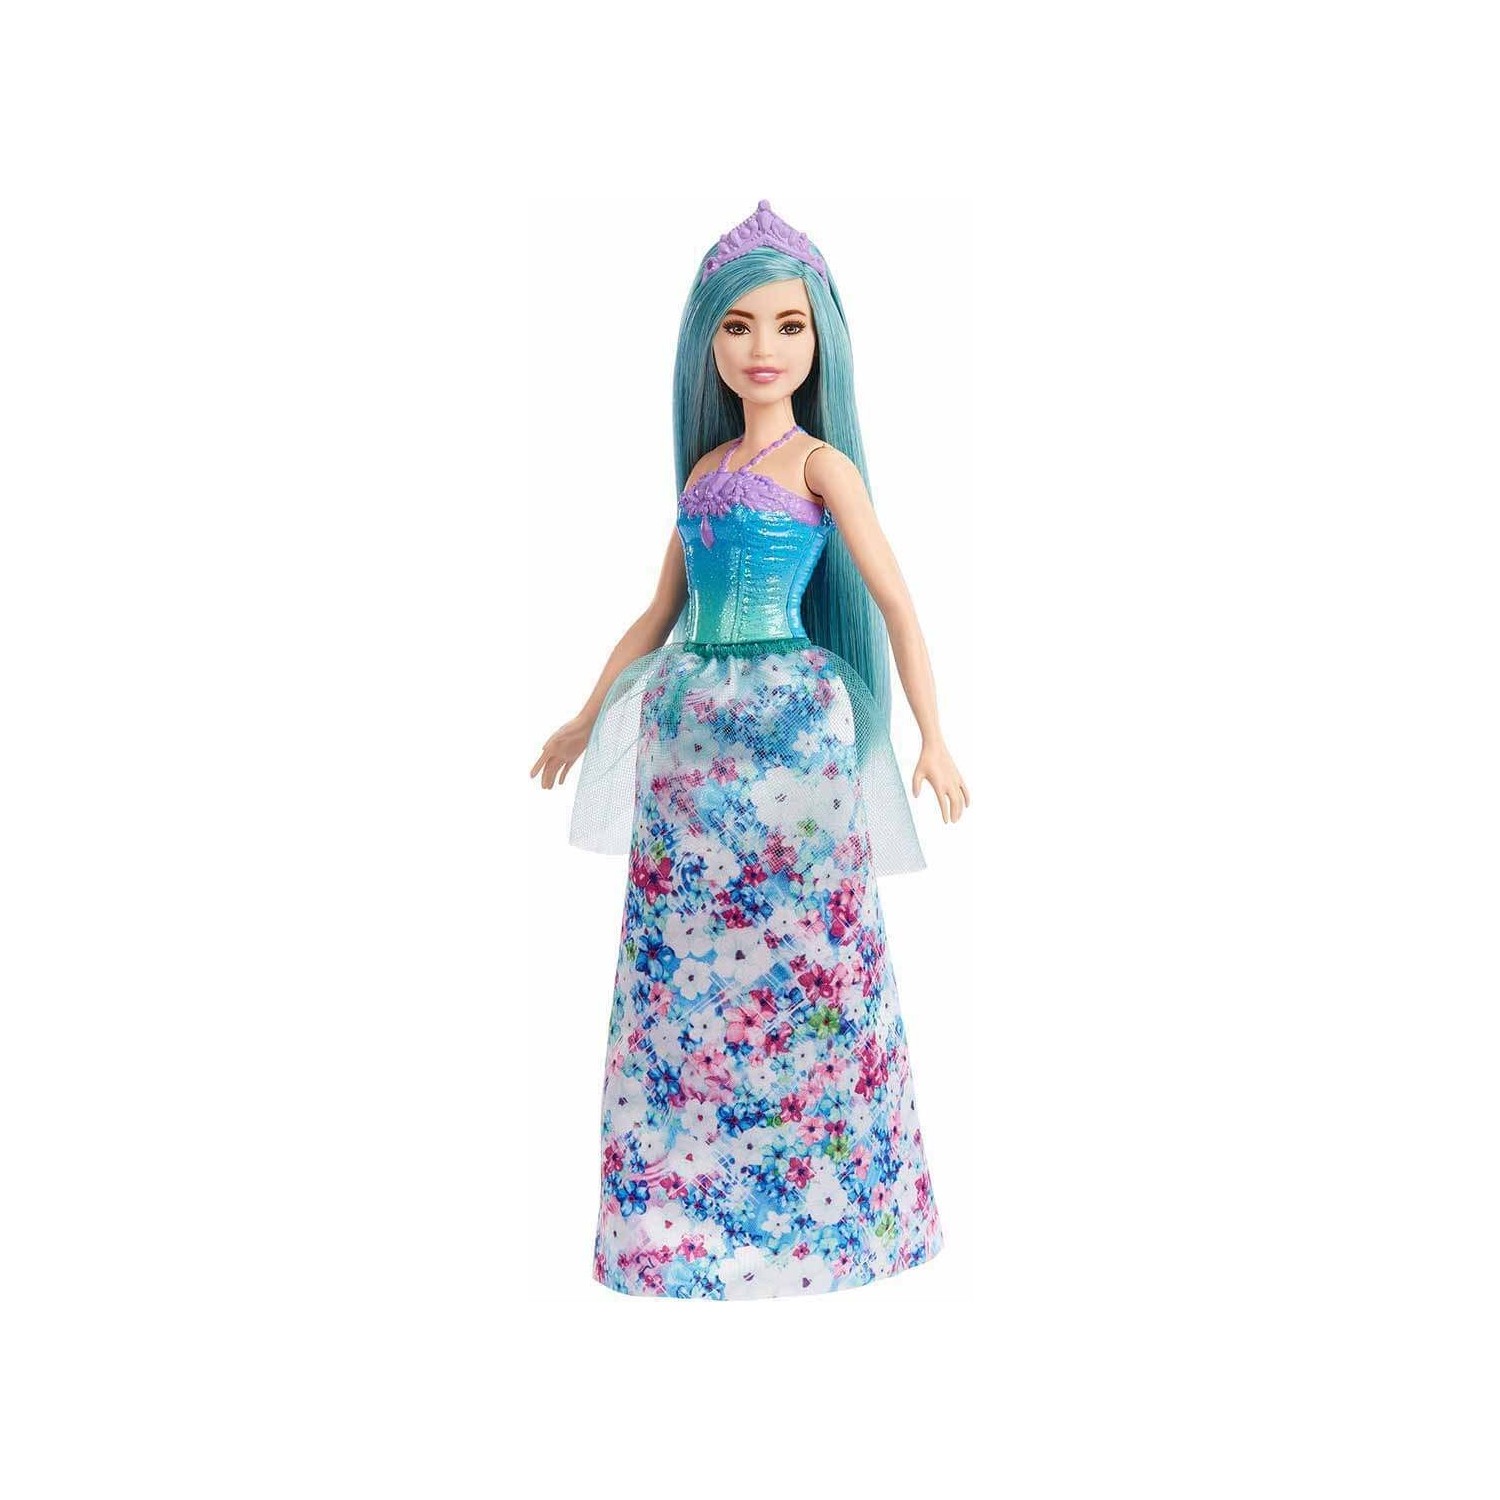 Кукла Barbie Dreamtopia Princess HGR16